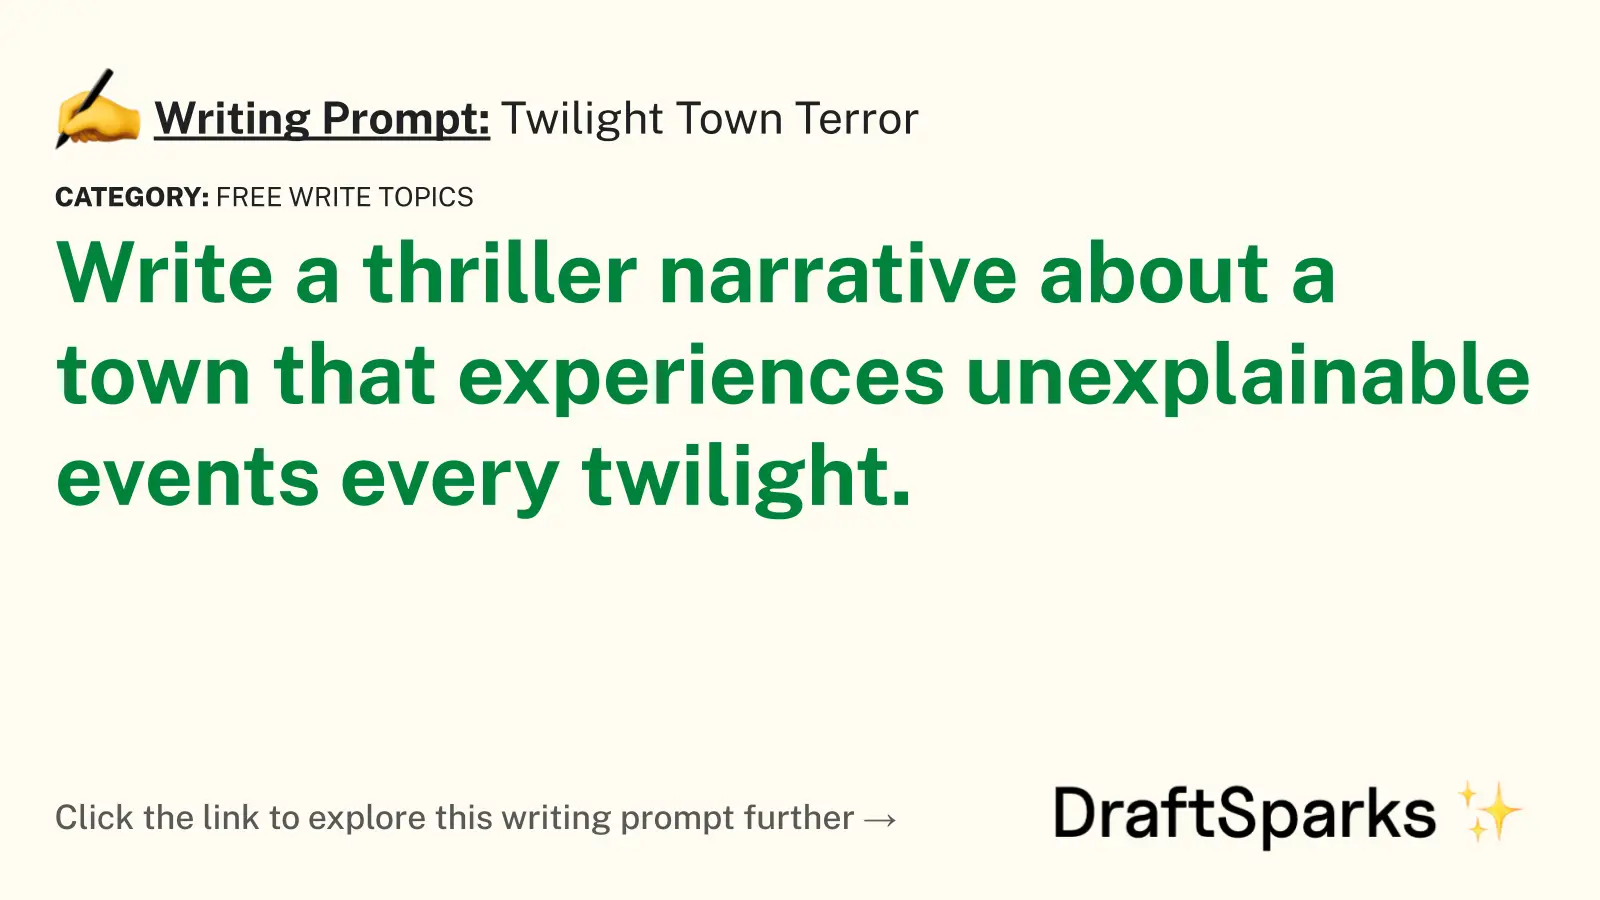 Twilight Town Terror